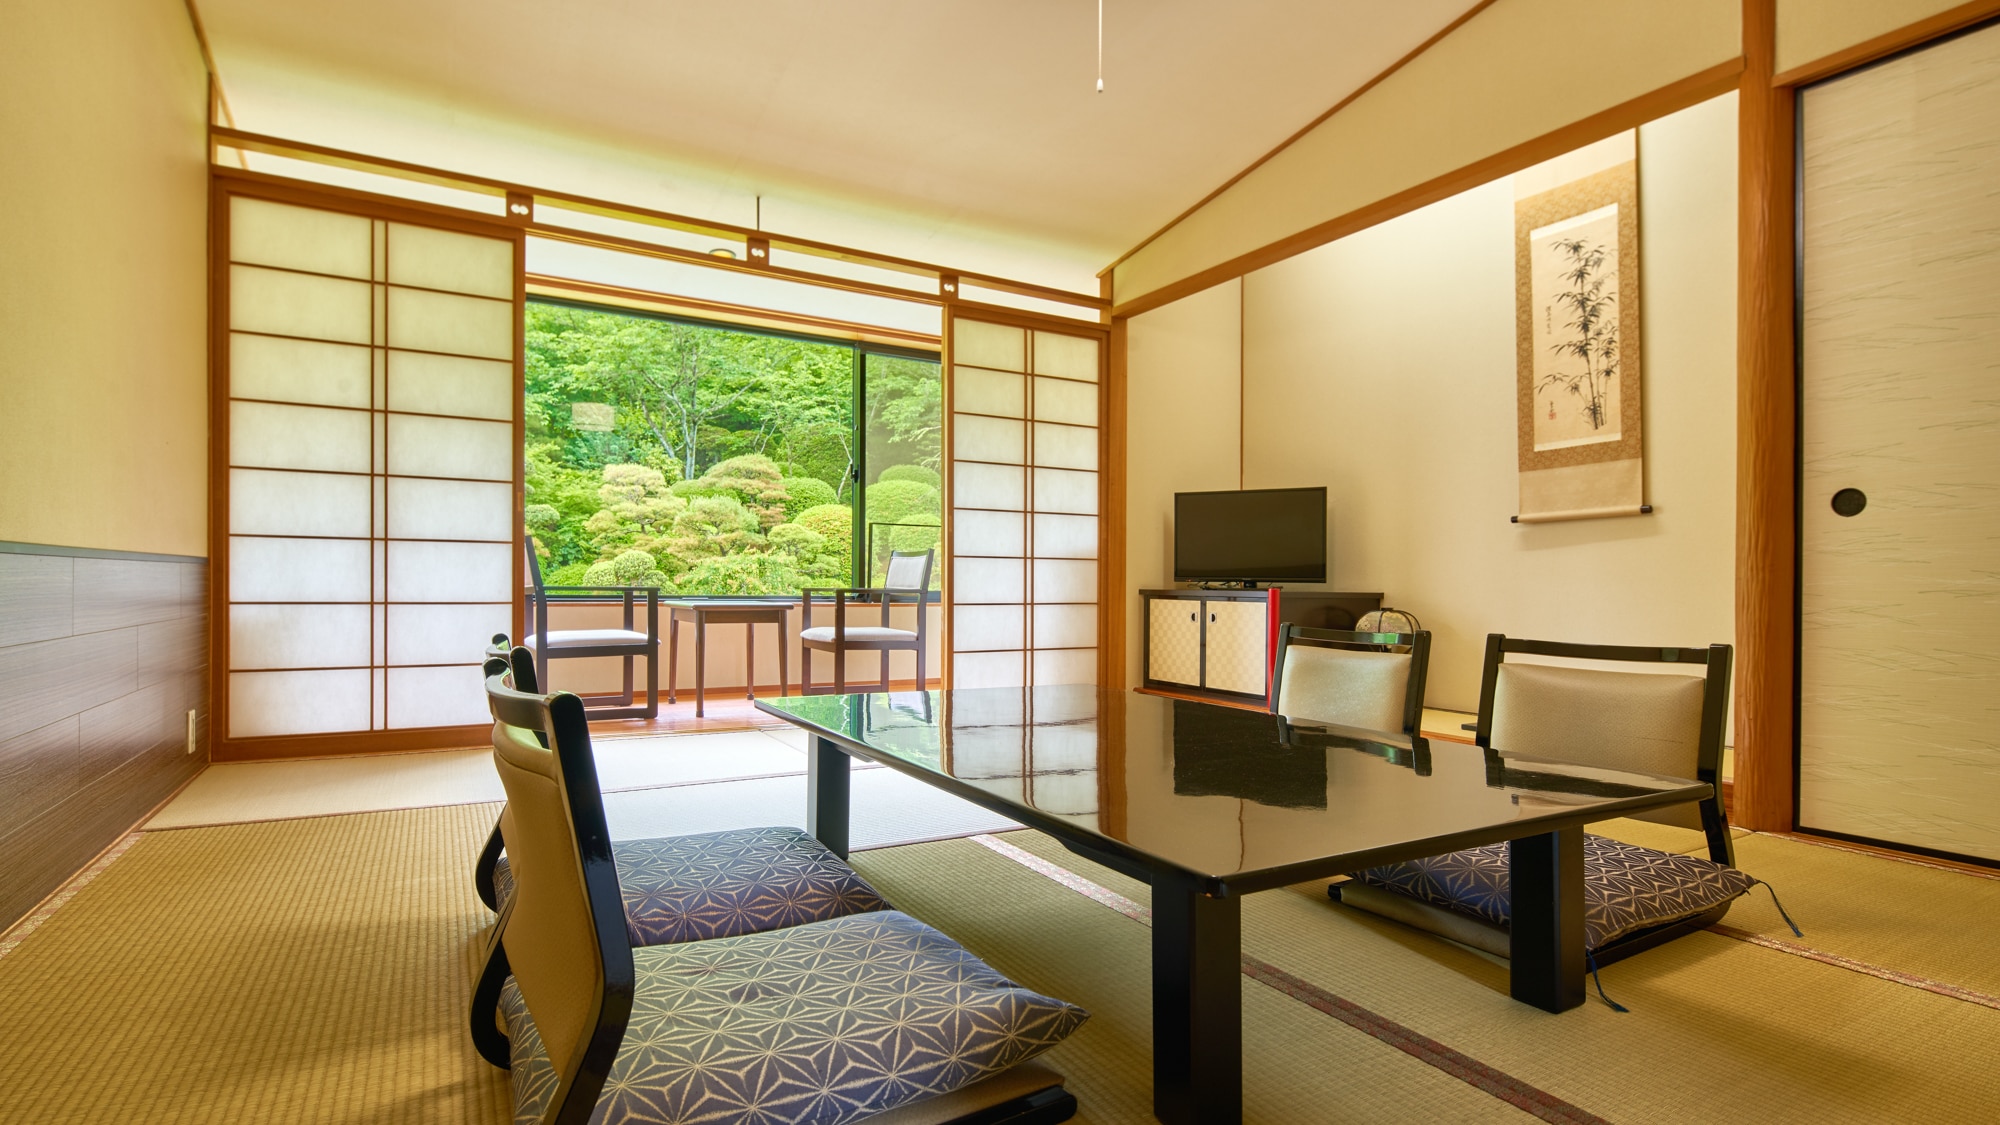 [房间/示例]请在欣赏1350坪日本花园的同时度过轻松的时光。